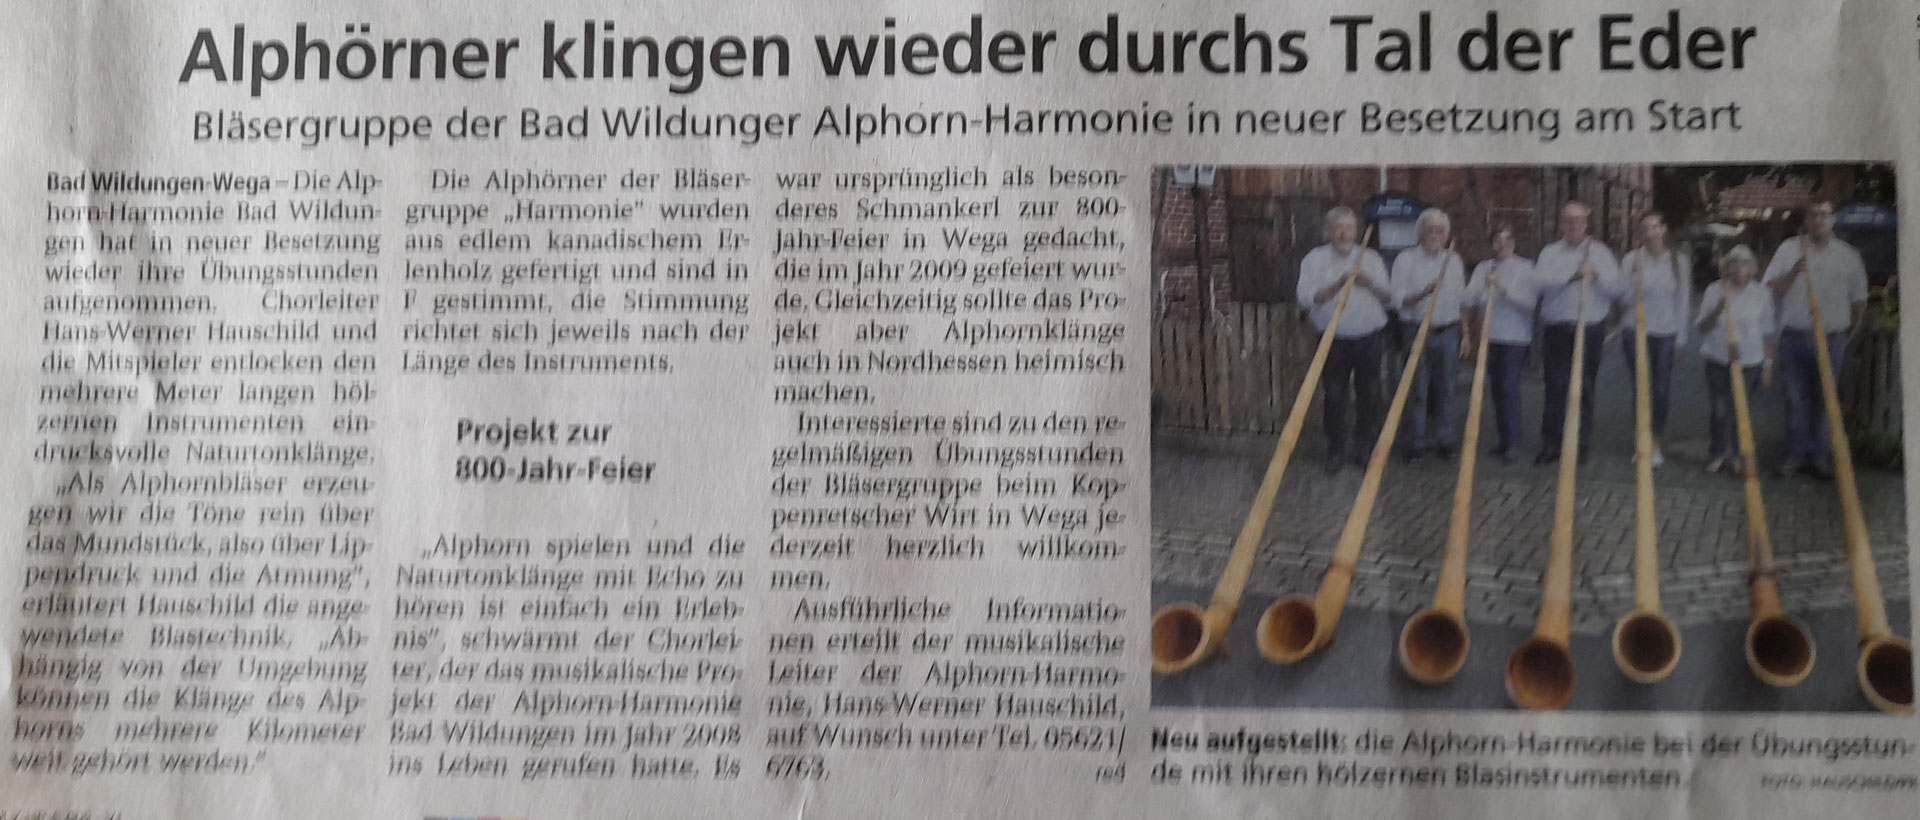 (c) Alphorn-harmonie.de